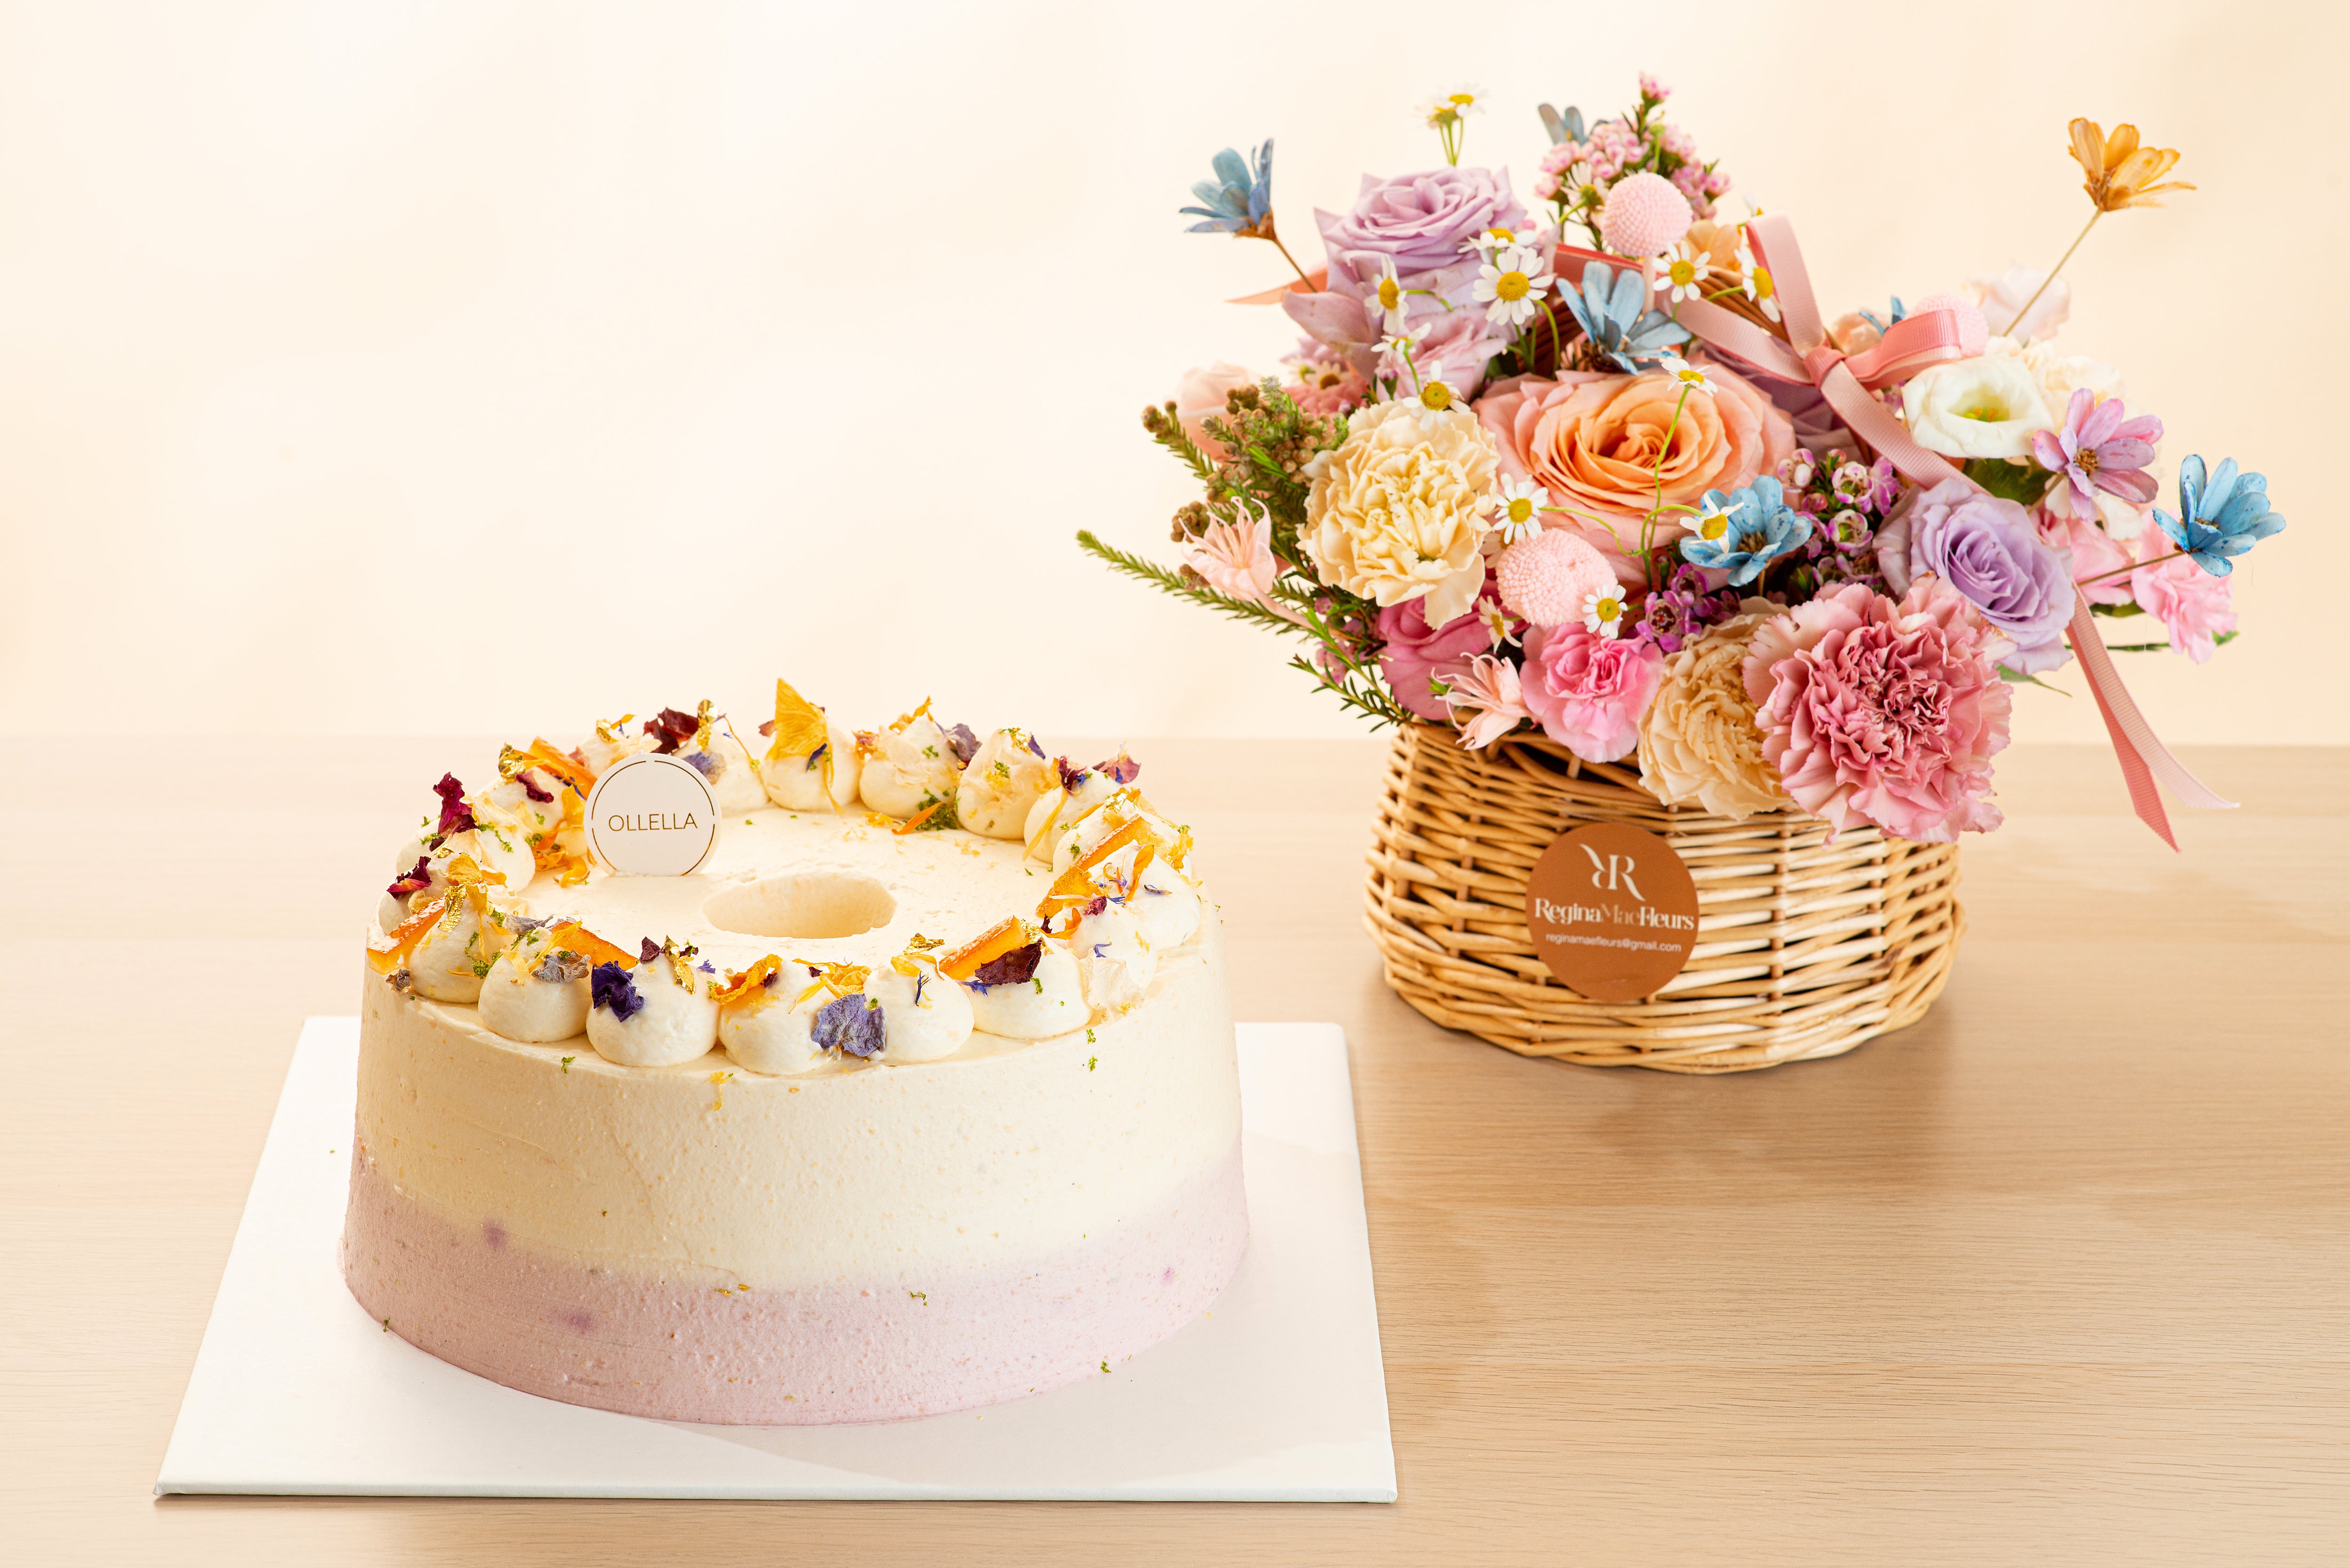 Earl Grey Yuzu Yoghurt Chiffon (Less Sweet) + Floral Basket (6,7,8 May only)